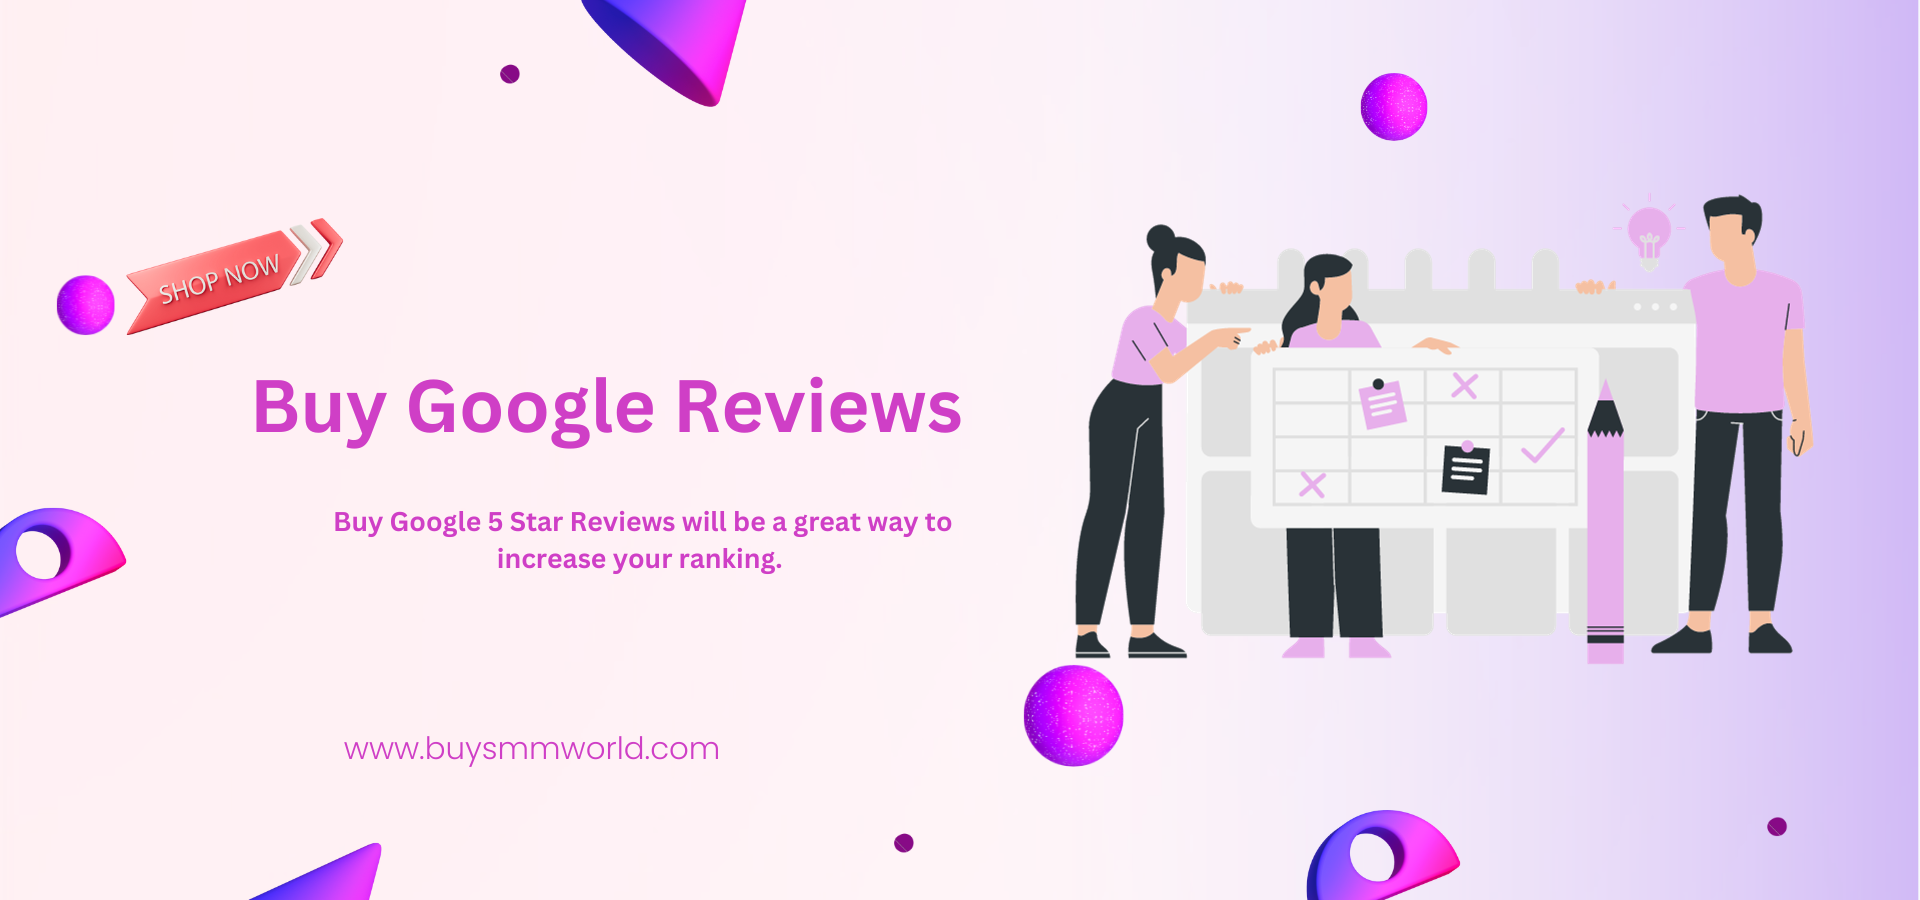 Buy Google Reviews
